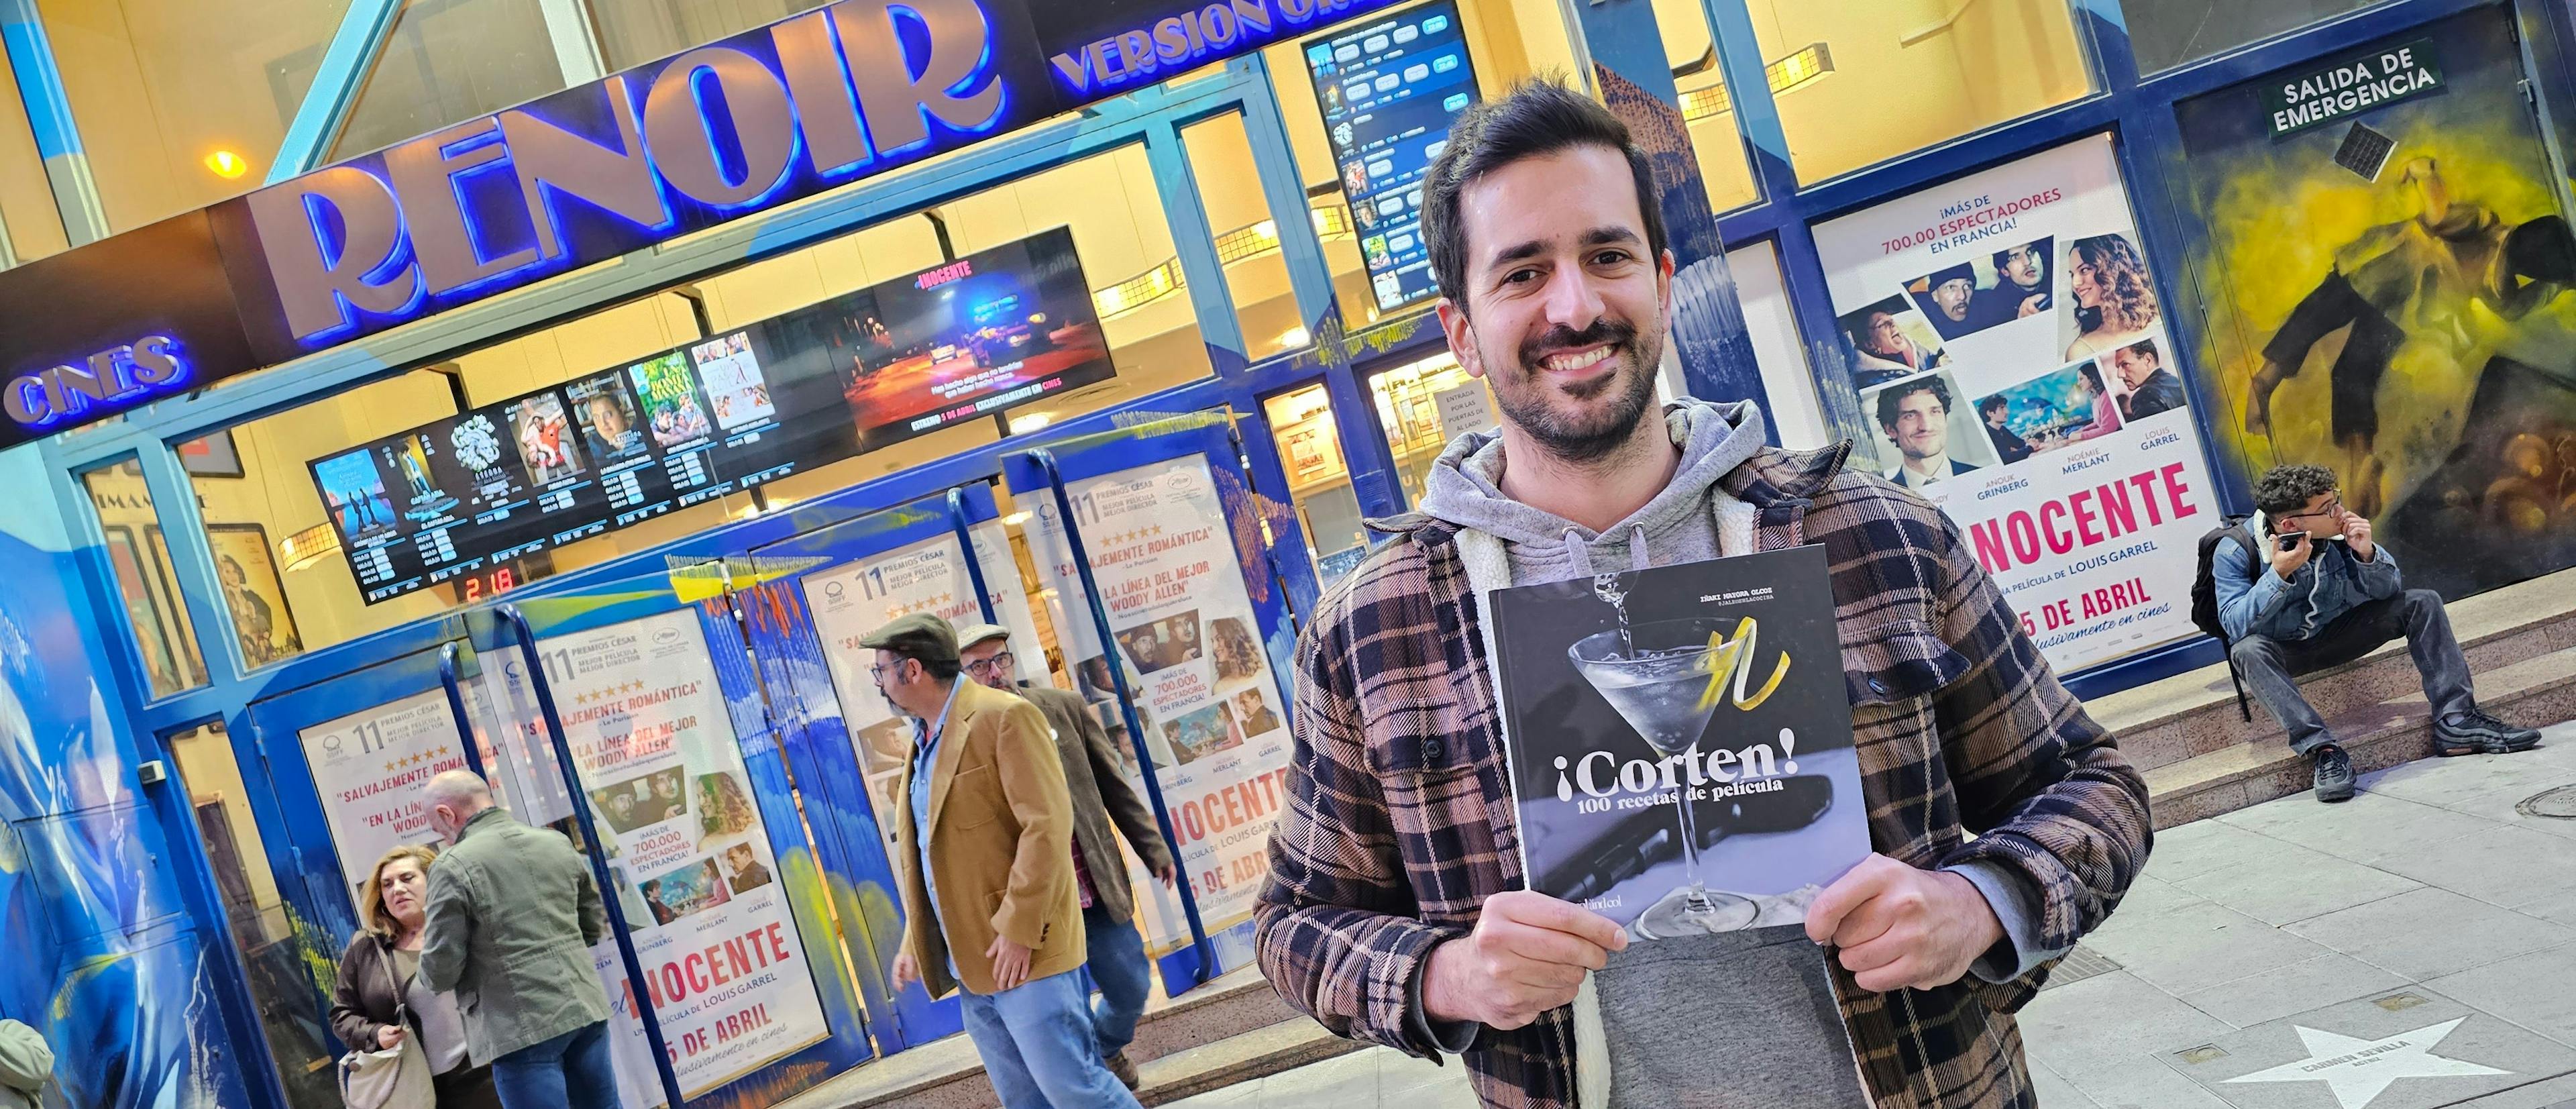 Iñaki Mayora posa con su libro '¡Corten! 100 recetas de película' ante los Cines Renoir Plaza de España en Madrid